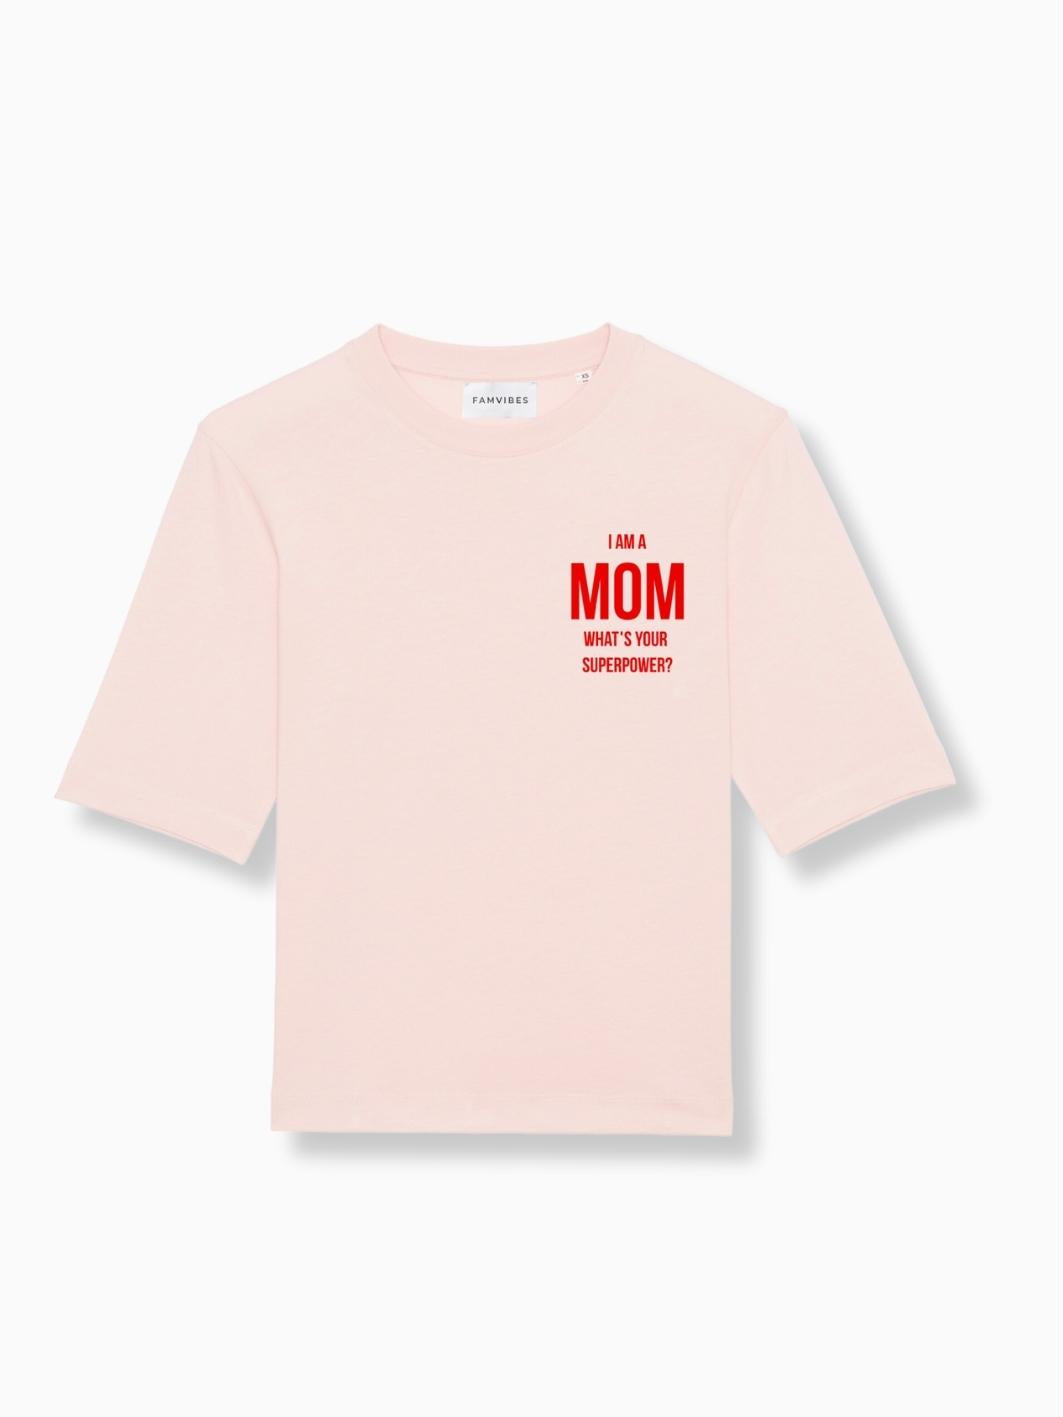 MOM - Damen T-Shirt rosa - FAMVIBES 